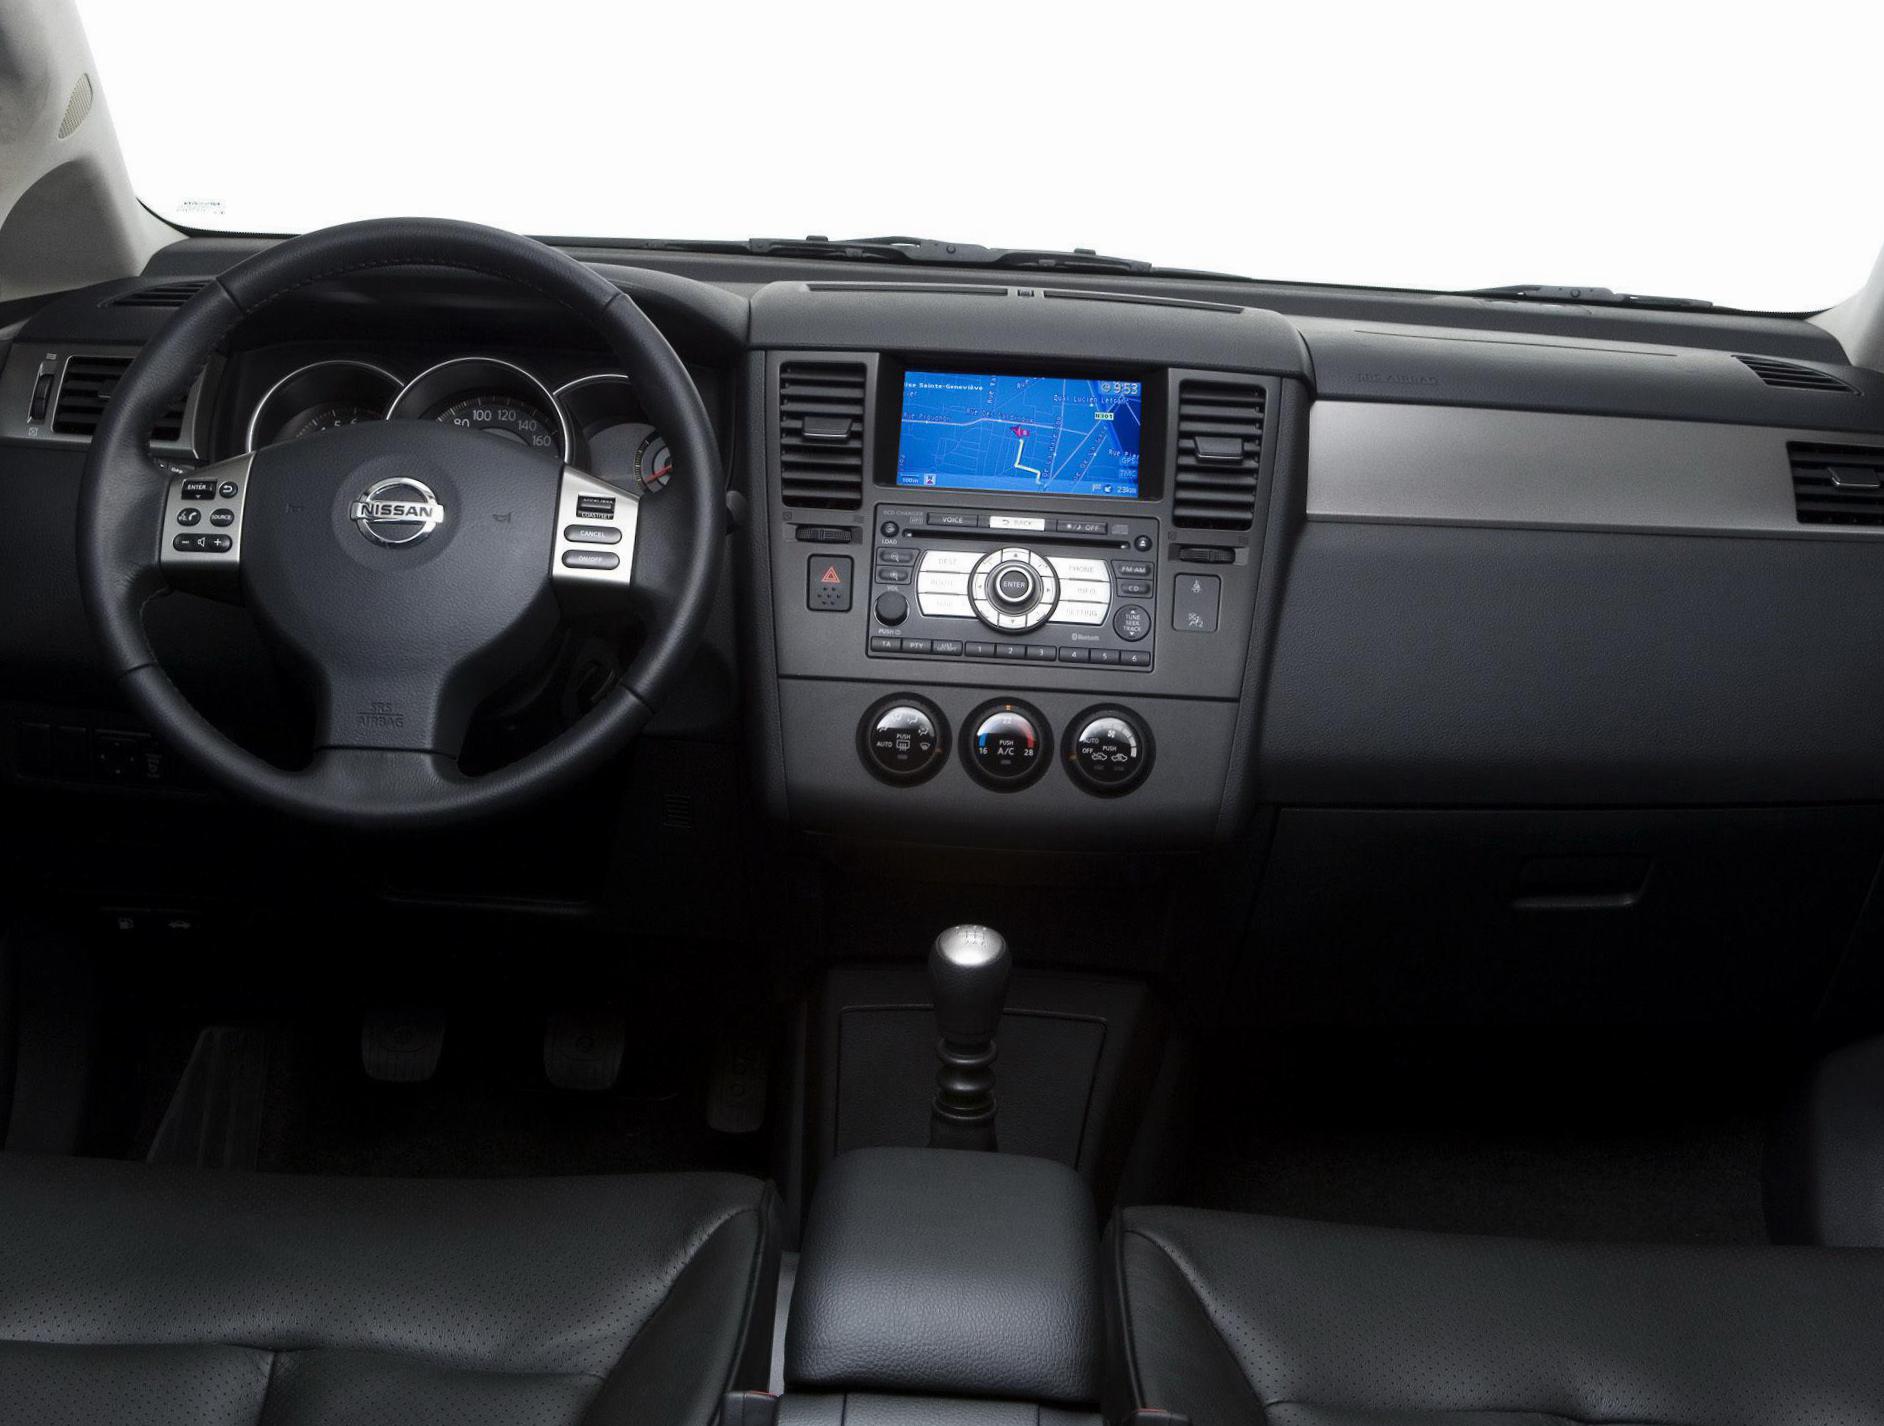 Tiida Hatchback Nissan Characteristics 2013